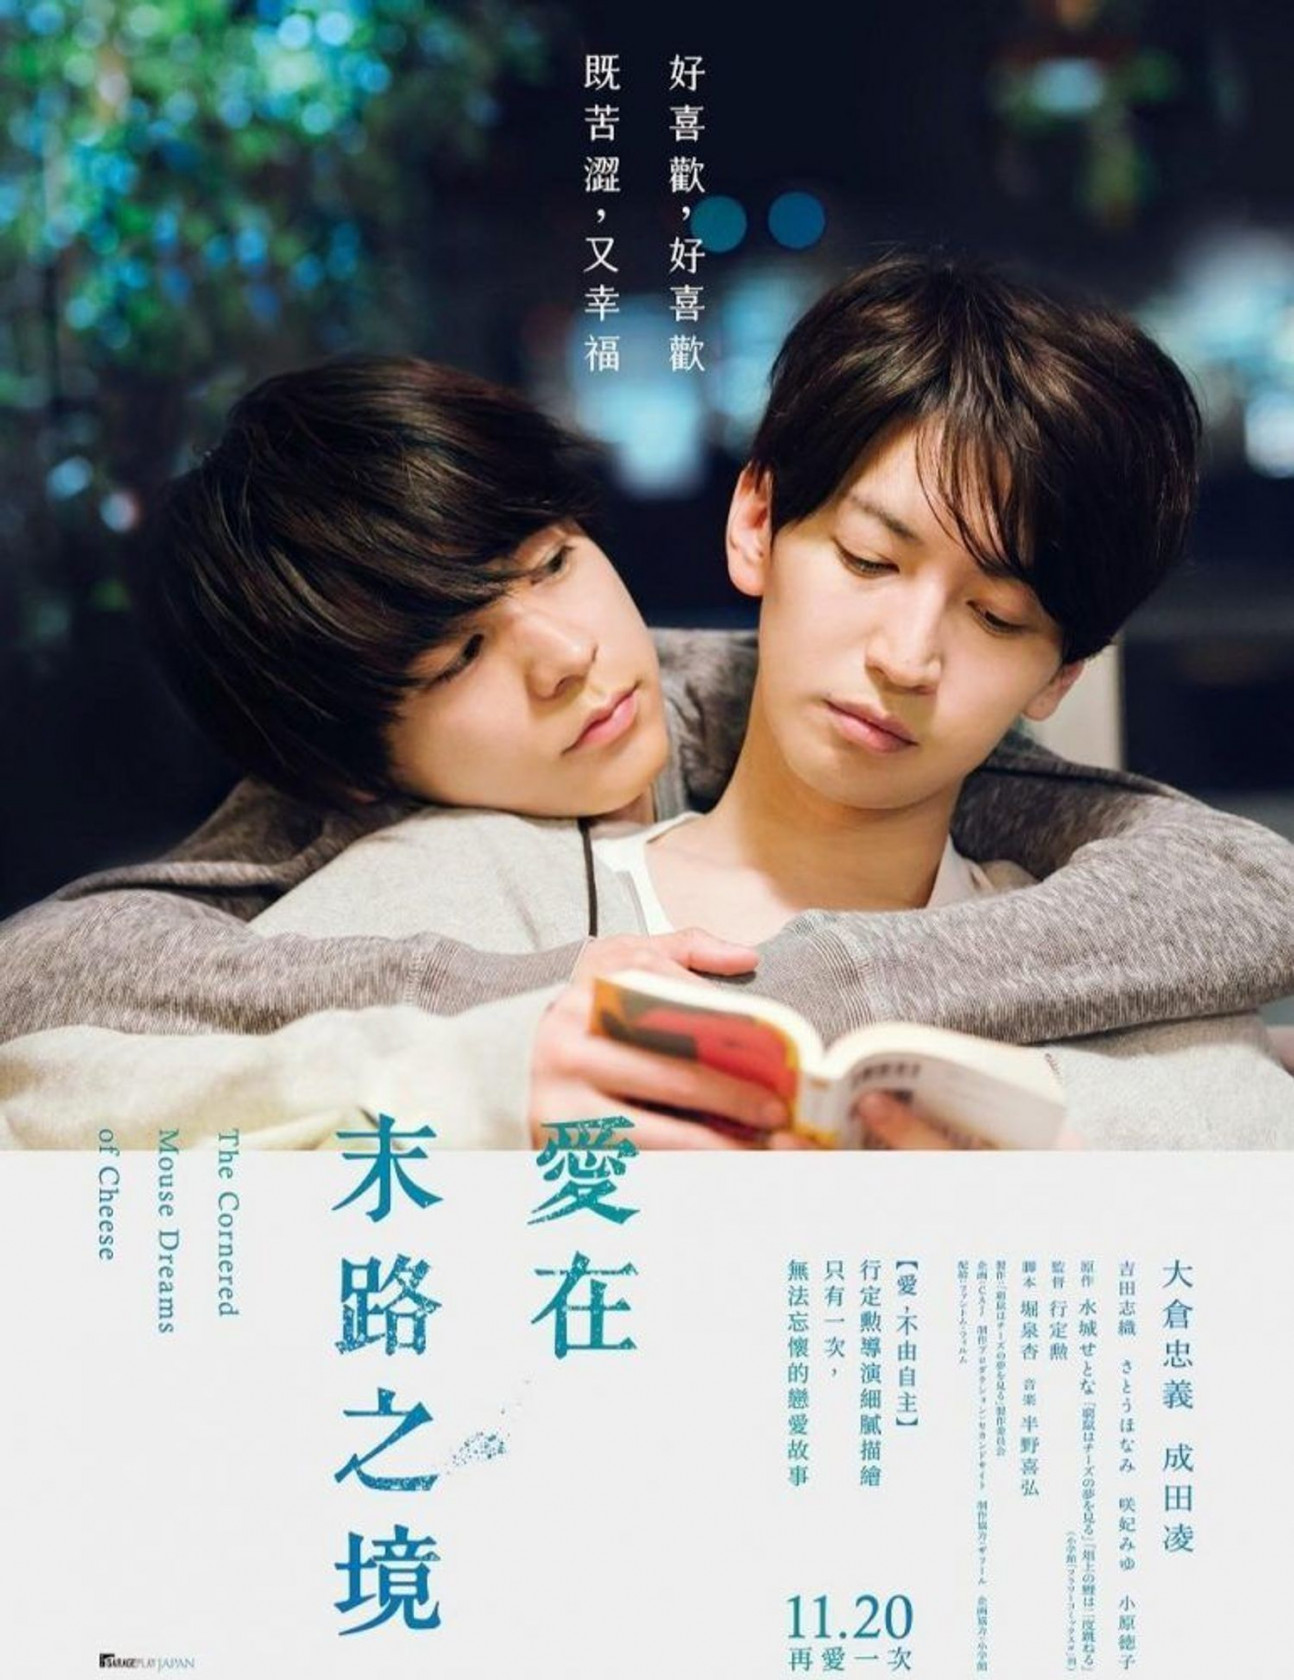 深夜情欲限定！盘点8部日本「大尺度电影」推荐，全裸床戏、唯美激情画面看完超害羞！